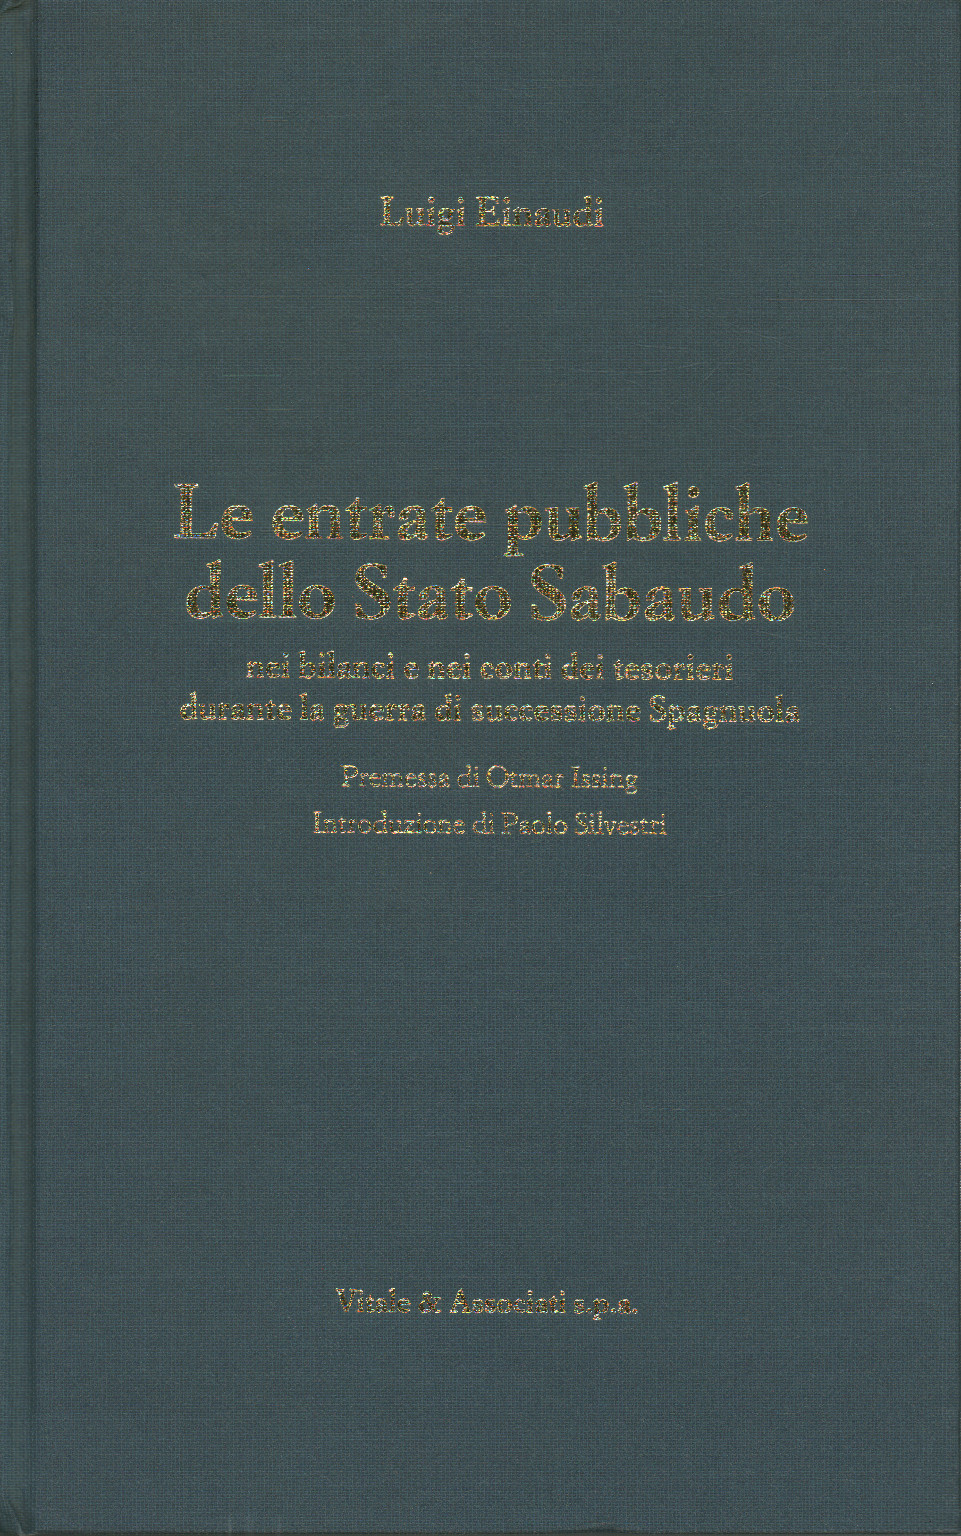 Les recettes publiques de l'État des Savoie dans le bilan, s.un.